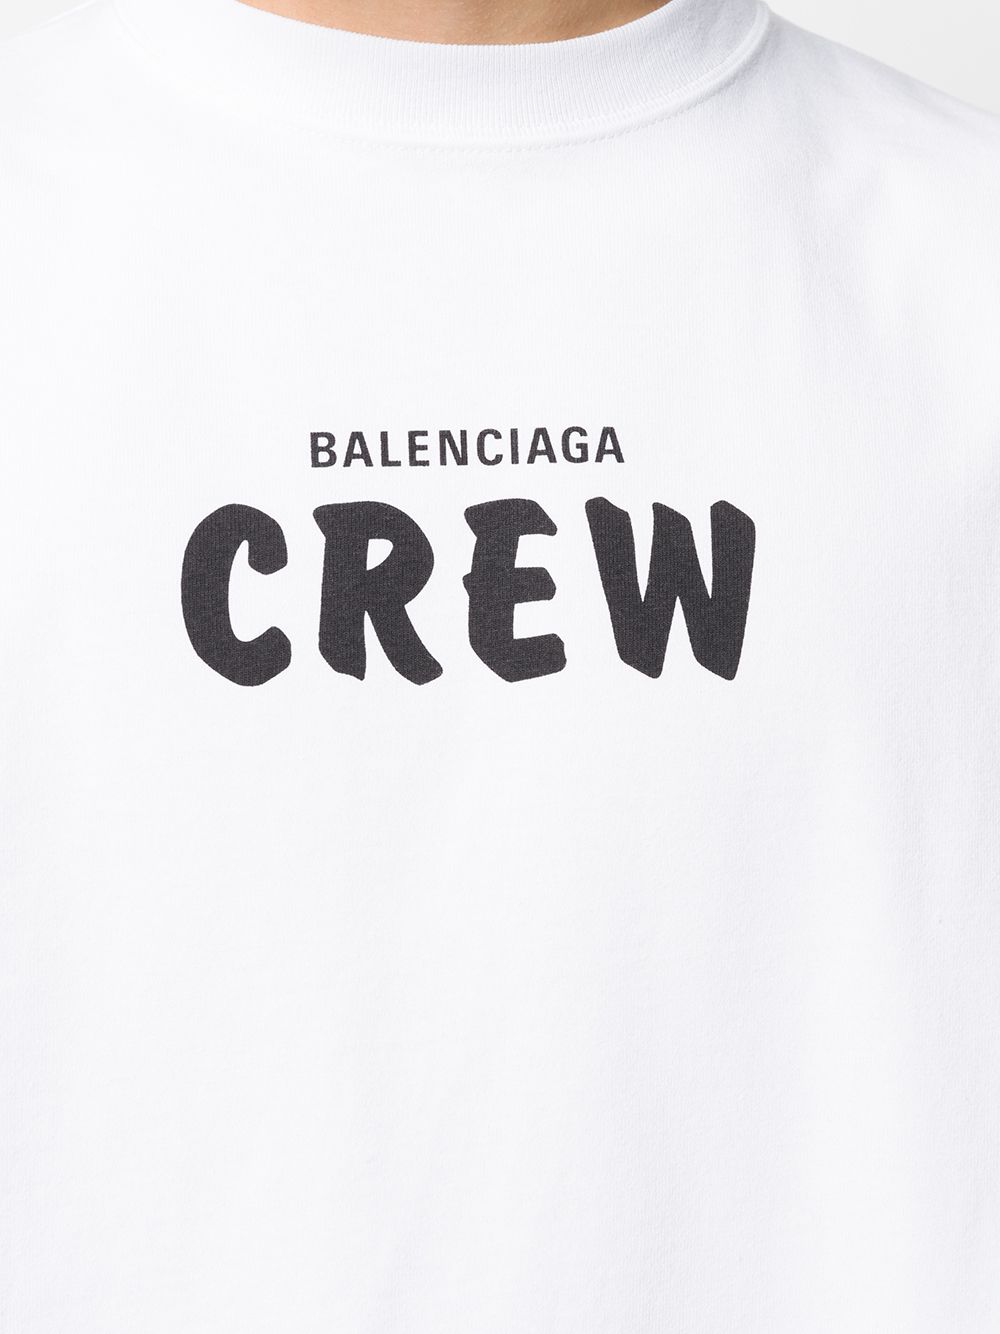 Balenciaga Large Fit T-shirt